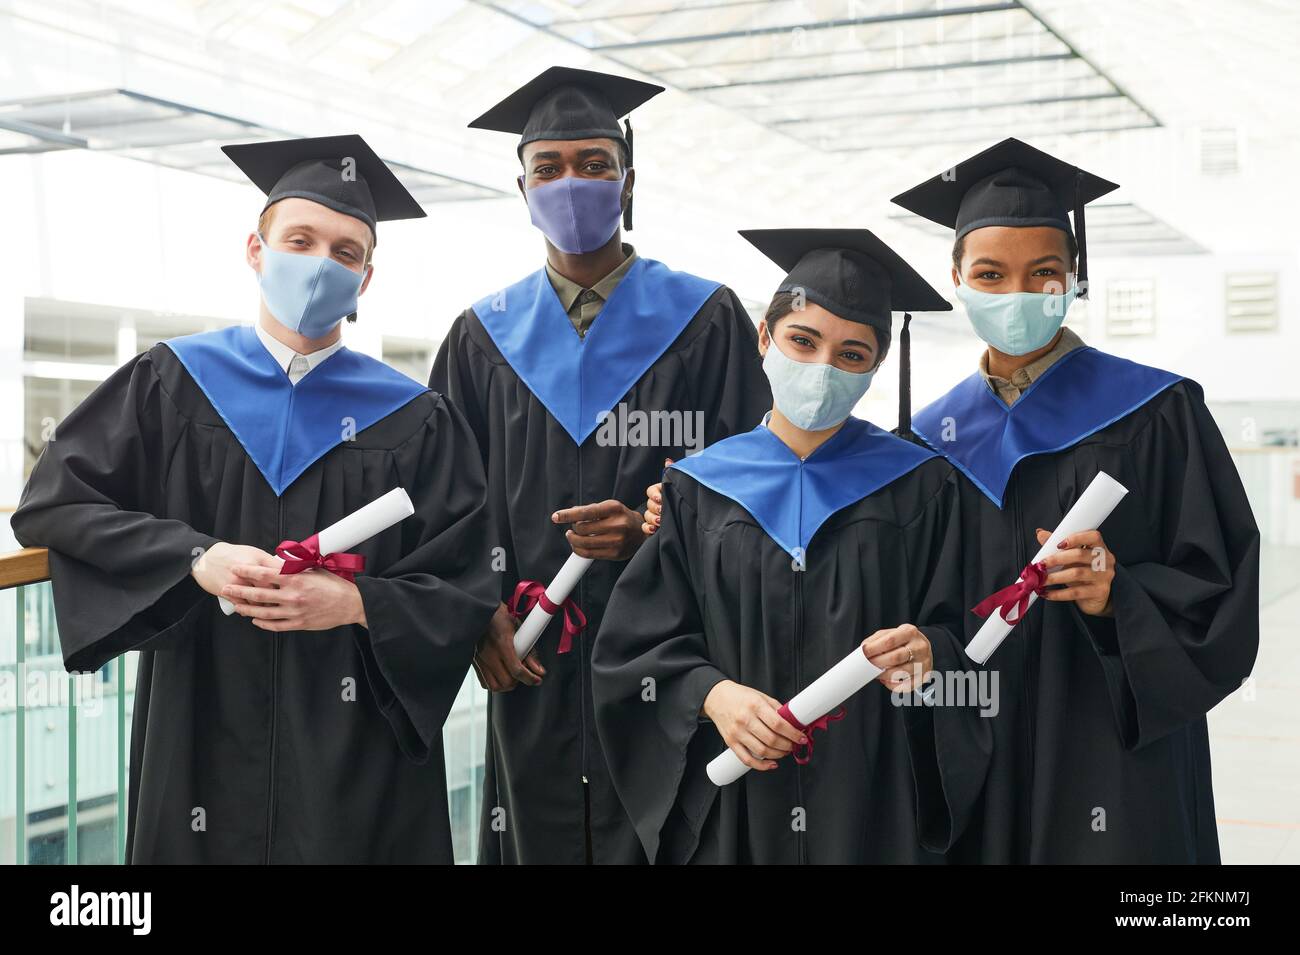 Grupo diverso de jóvenes que usan batas y máscaras de graduación mientras posan en el interior de la universidad Foto de stock